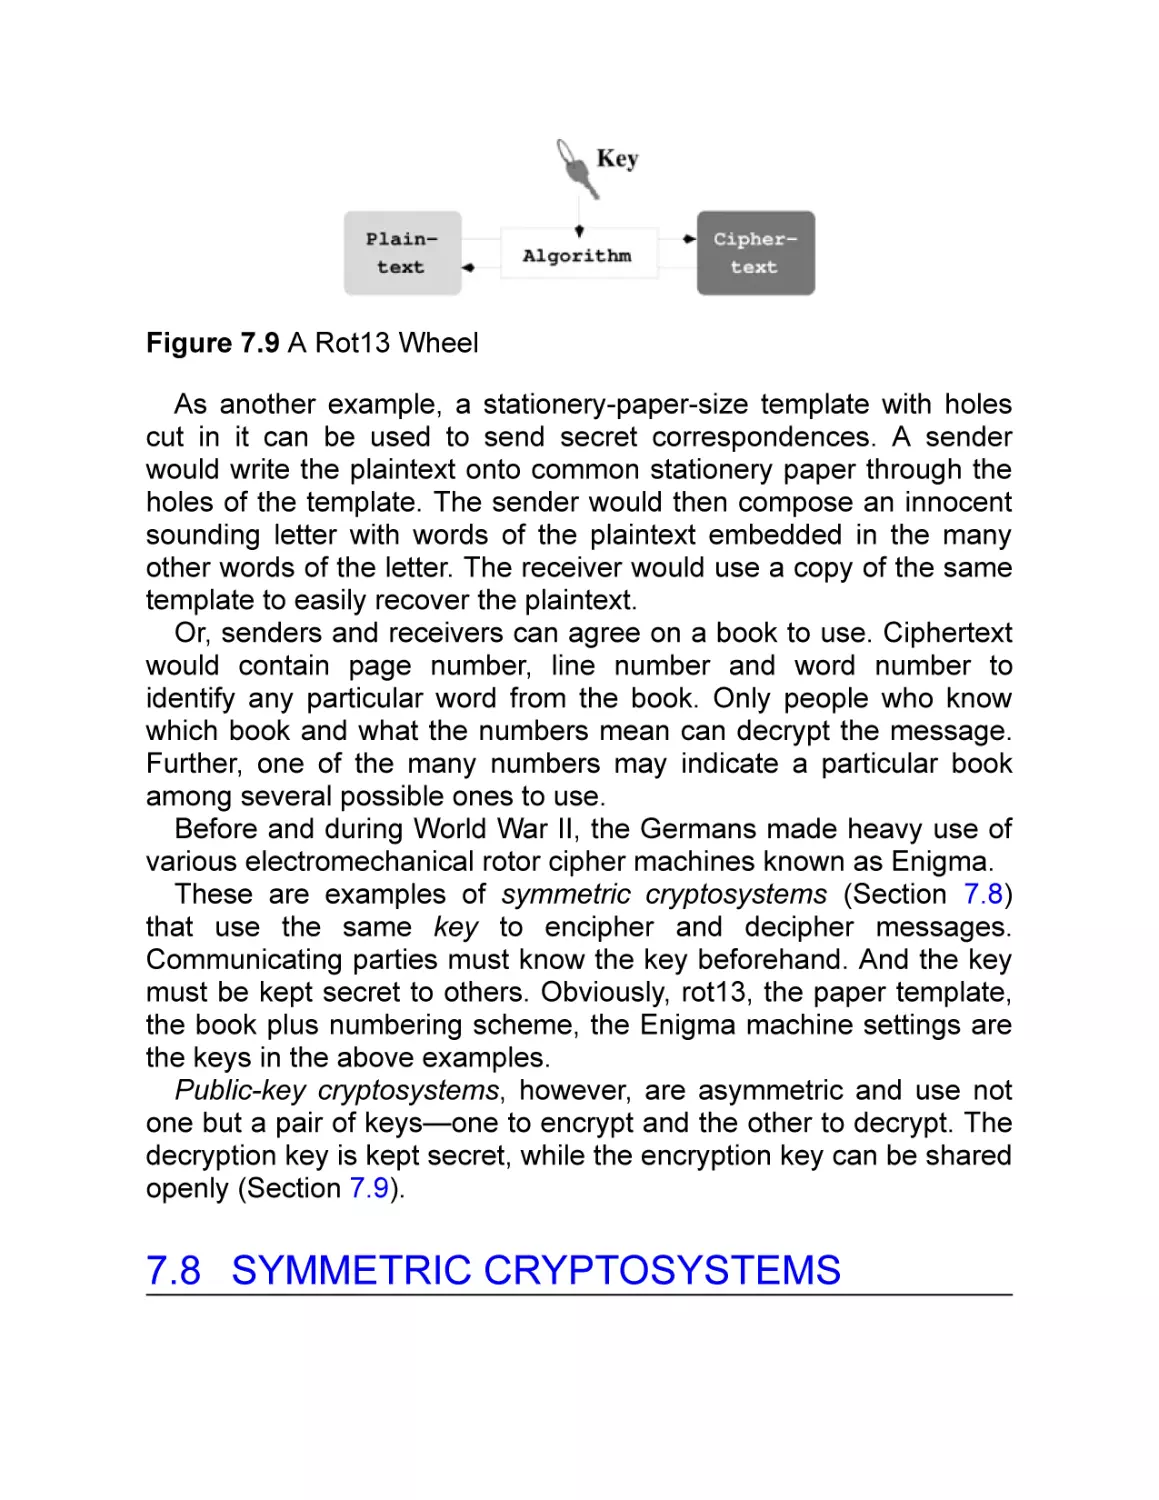 7.8 Symmetric Cryptosystems